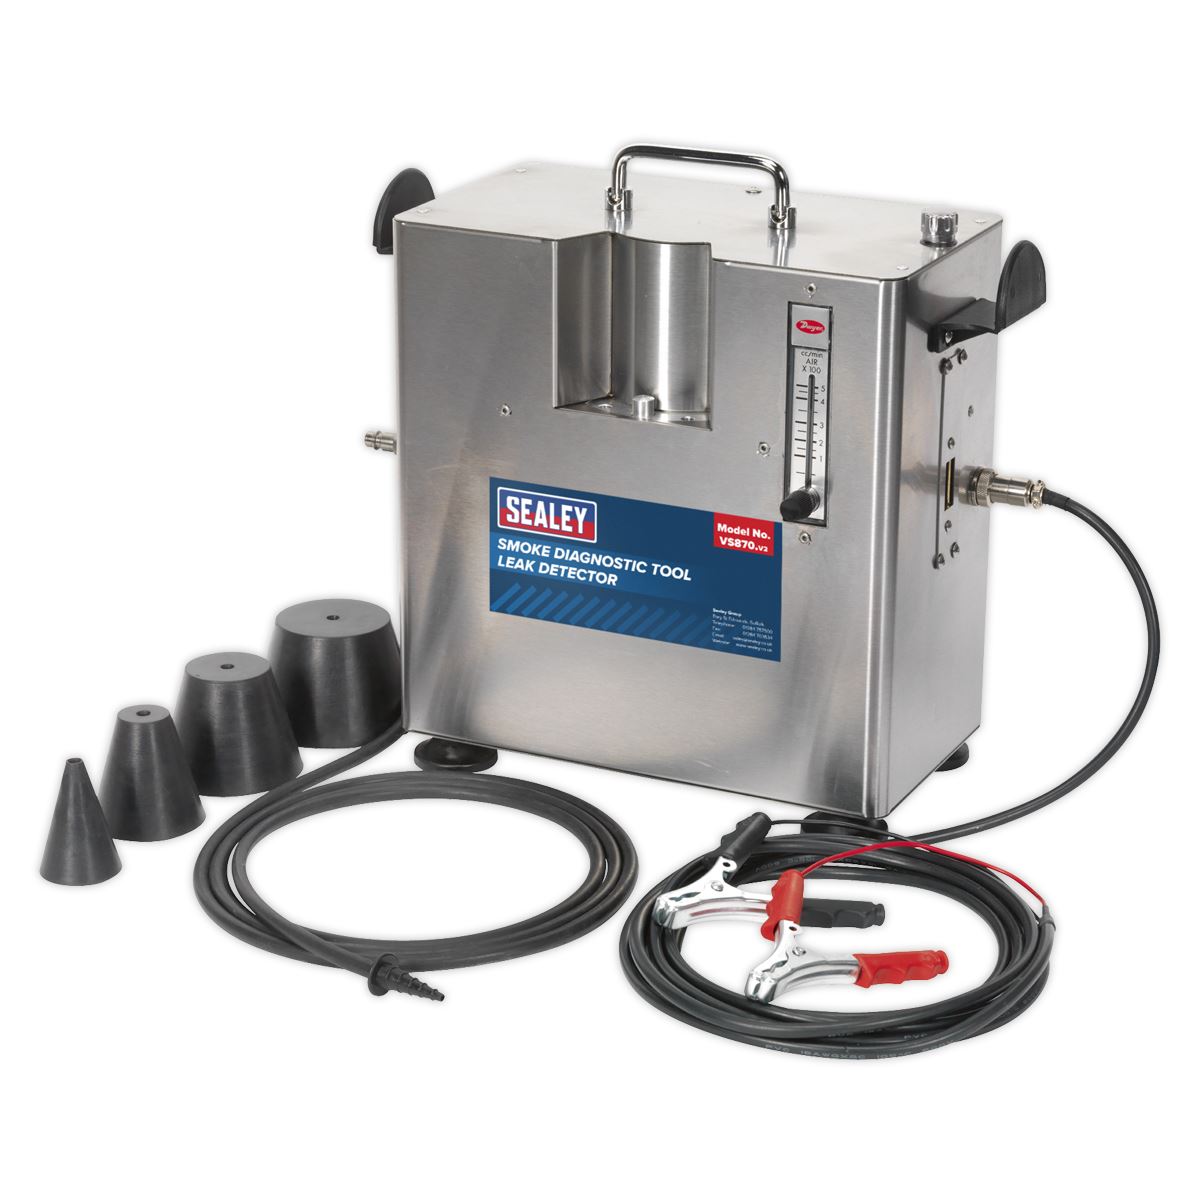 Sealey Smoke Diagnostic Tool - Leak Detector